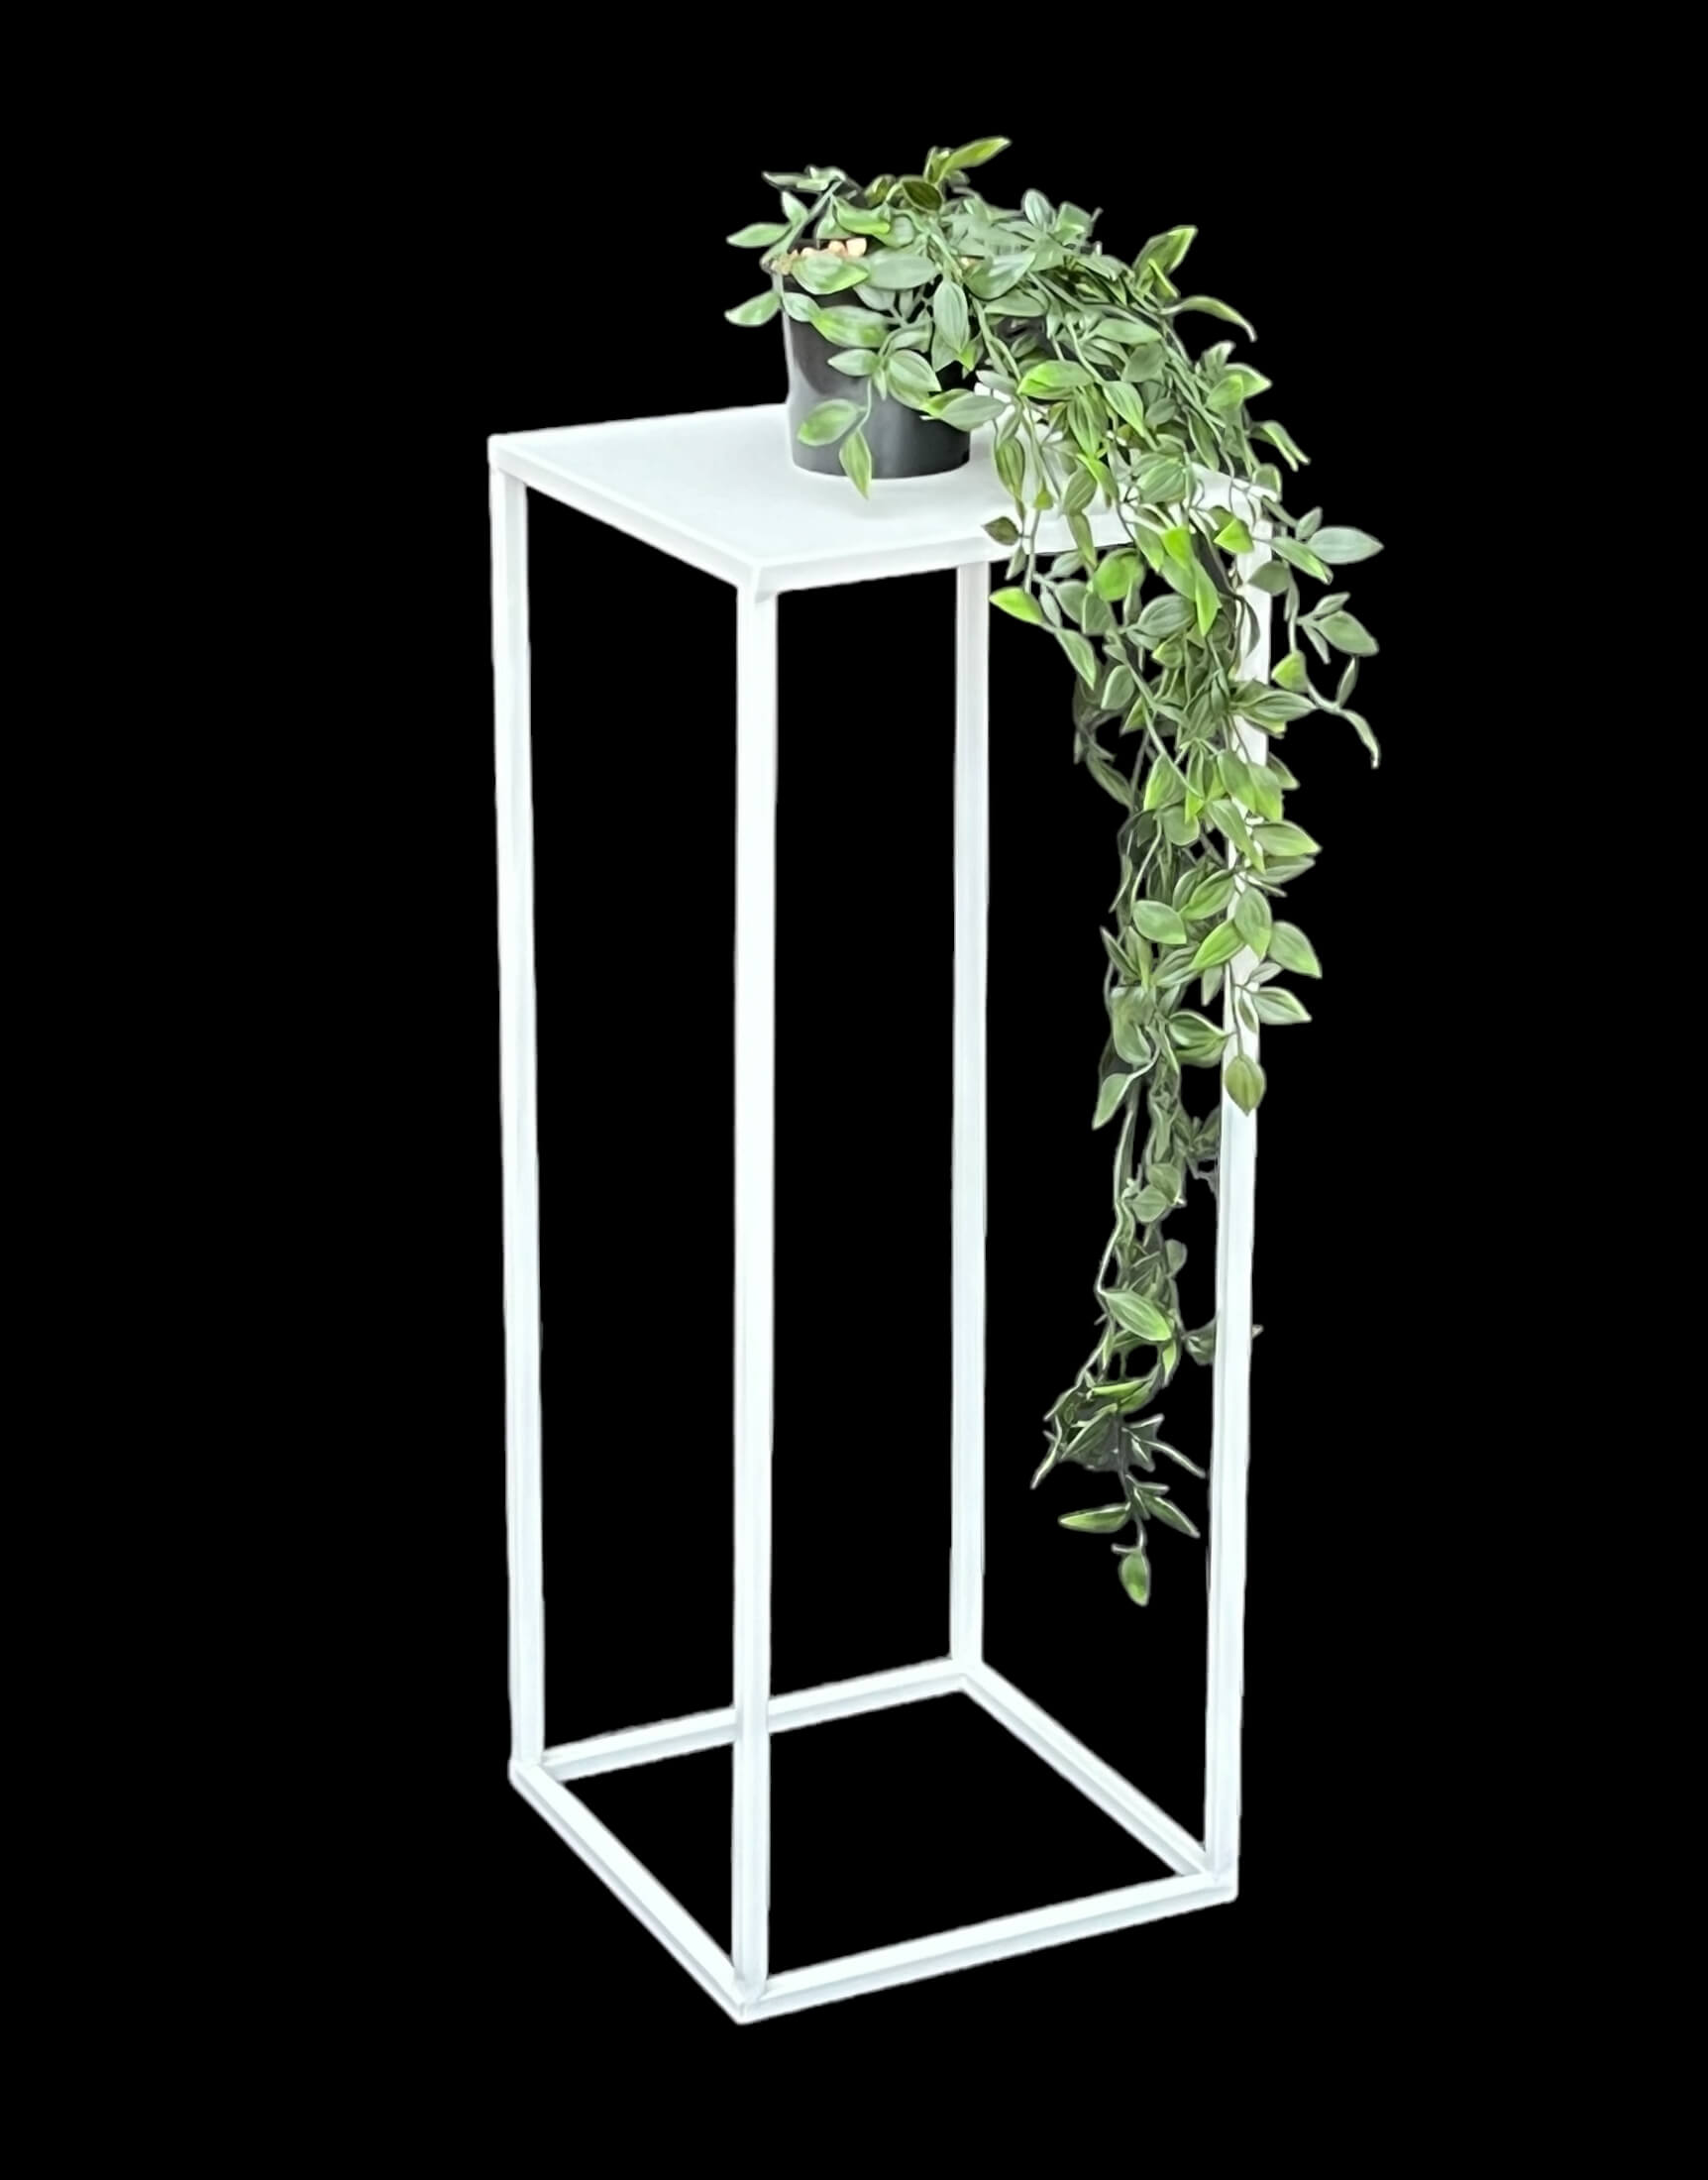 DanDiBo Blumenhocker Metall Weiß Eckig 60 cm Blumenständer Beistelltisch  96482 M Blumensäule Modern Pflanzenständer Pflanzenhocker - DanDiBo-Ambiente